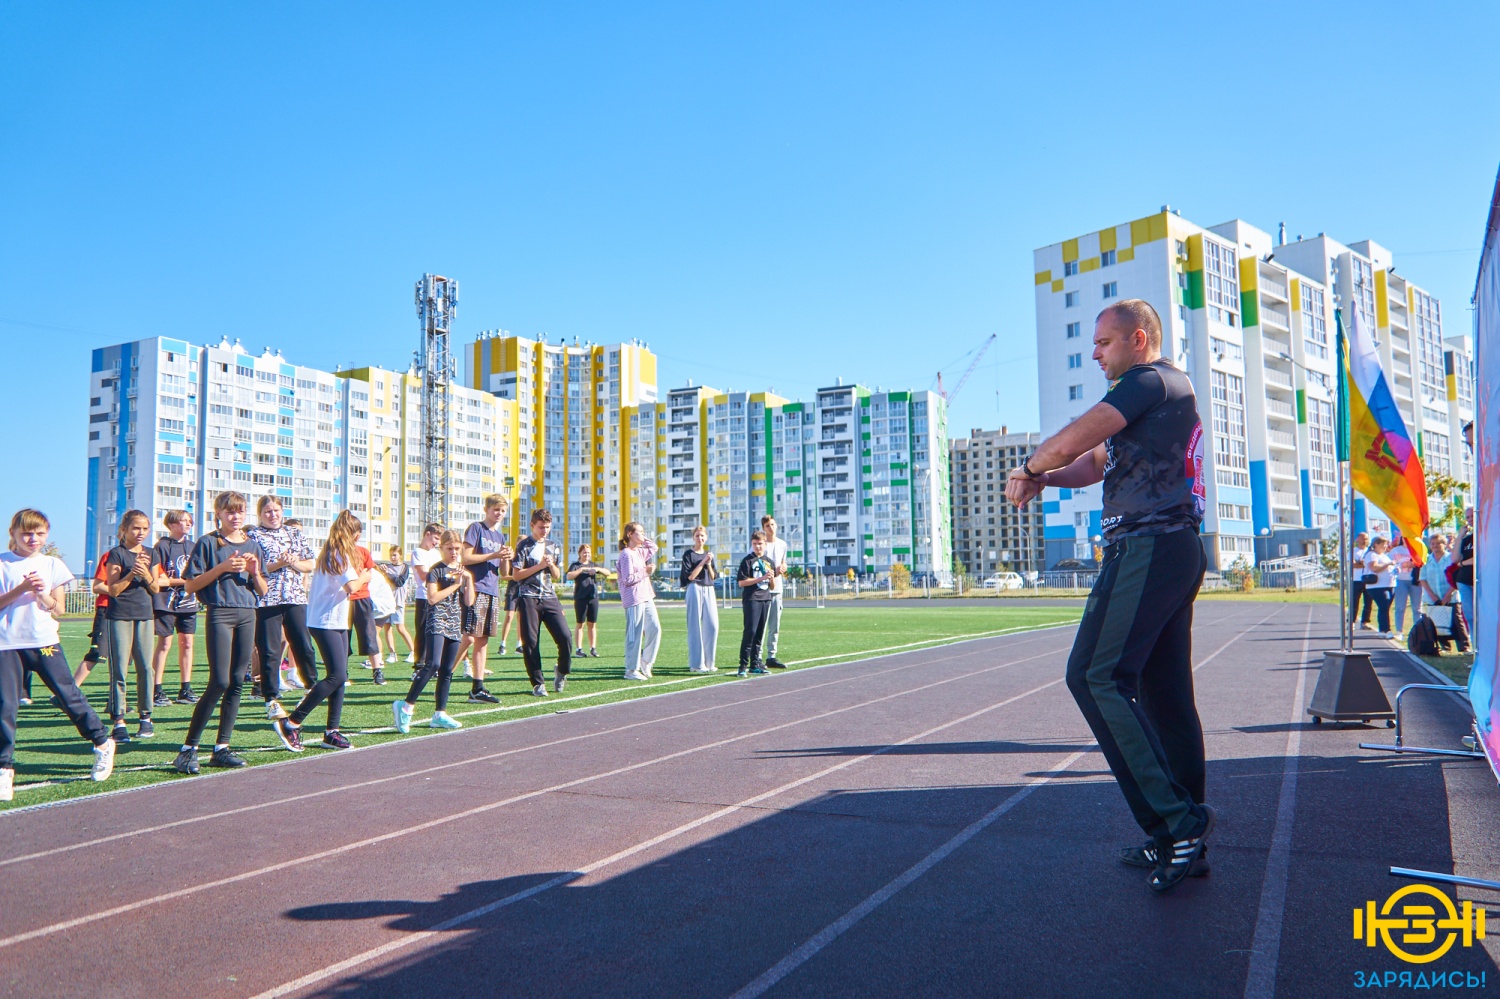 В Пензенской области стартовал спортивный молодежный проект «Зарядись»